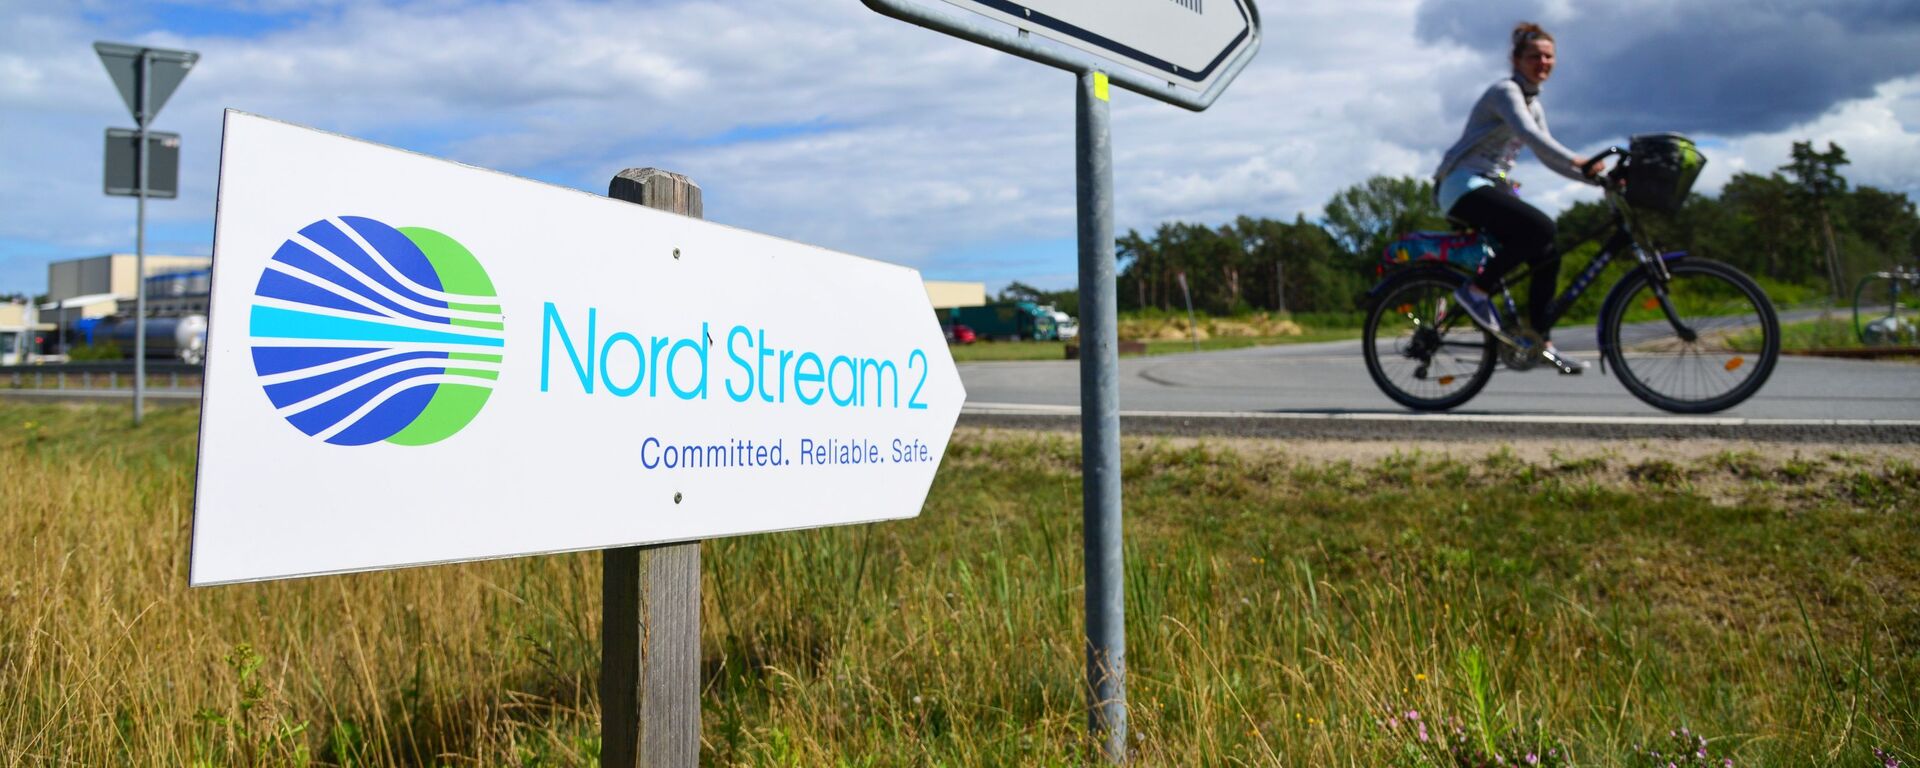 Una señal de Nord Stream 2 en Alemania - Sputnik Mundo, 1920, 24.11.2021